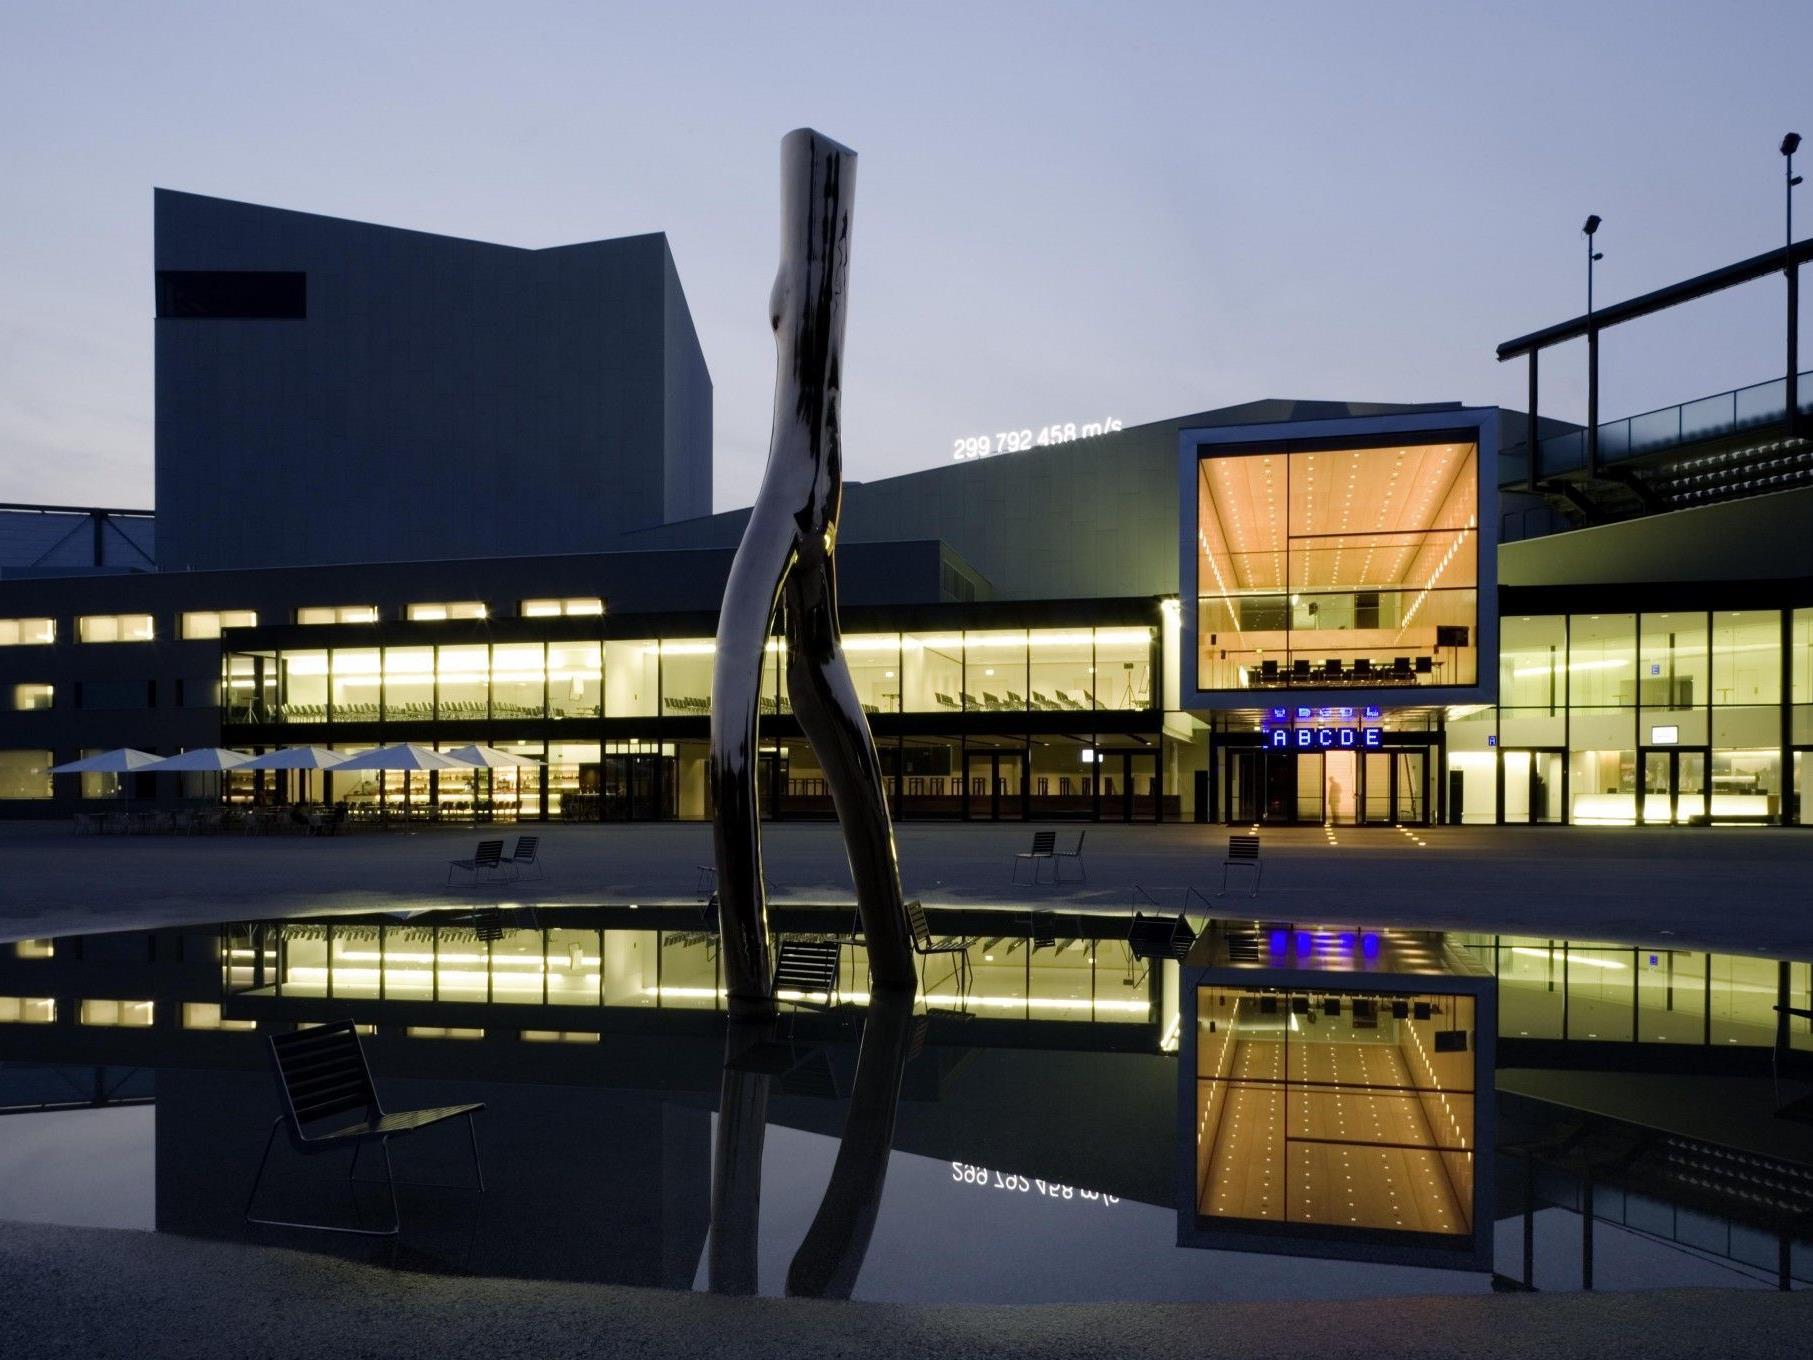 Das Festspielhaus Bregenz ist laut MICE Report „Bestes Kongresszentrum Österreichs in seiner Größe“.